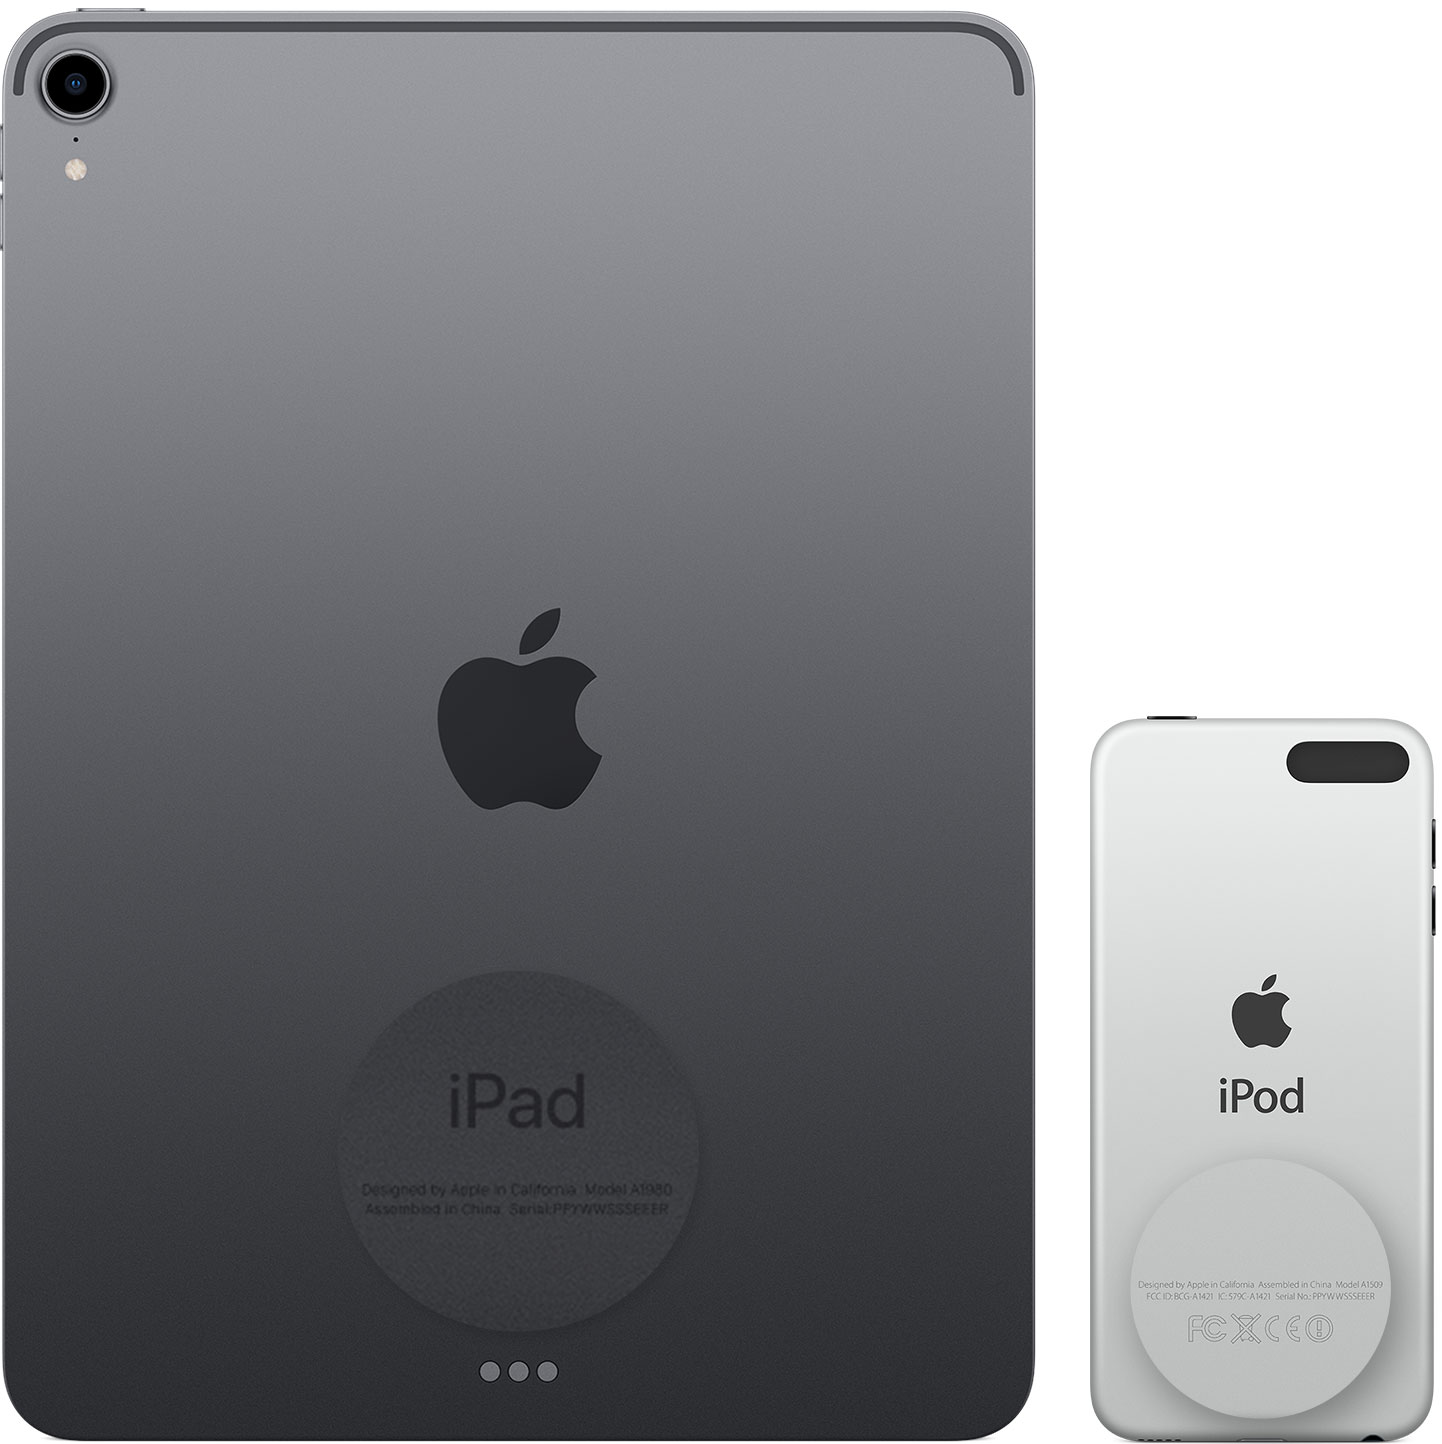 Resimde, bir iPad ve bir iPod touch'ın arka yüzü gösterilmektedir